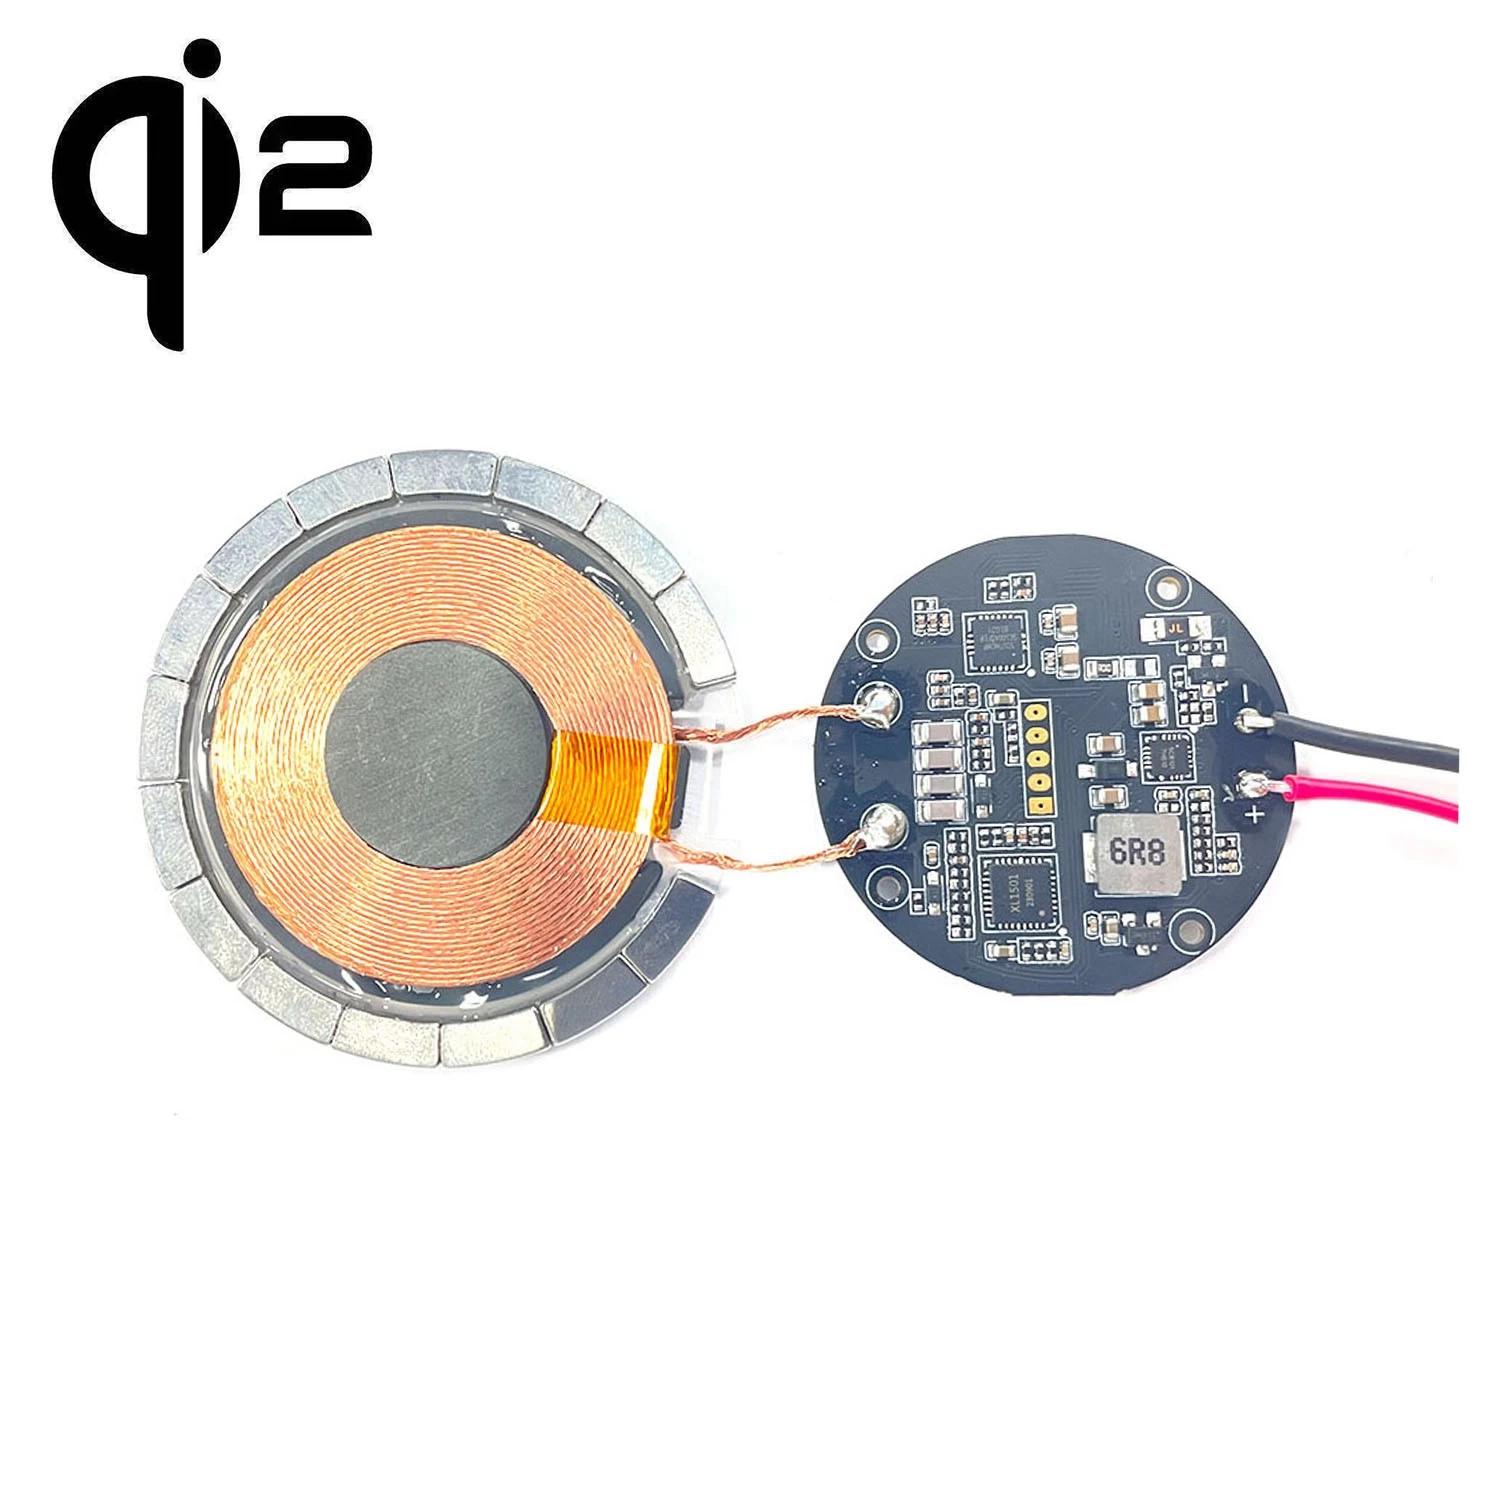 Chine qi2 MPP module de charge magnétique rapide sans fil magnétique émetteur récepteur 15w rapide Qi2 QI MPP deux modules de chargeur magnétique sans fil personnalisation fabricant